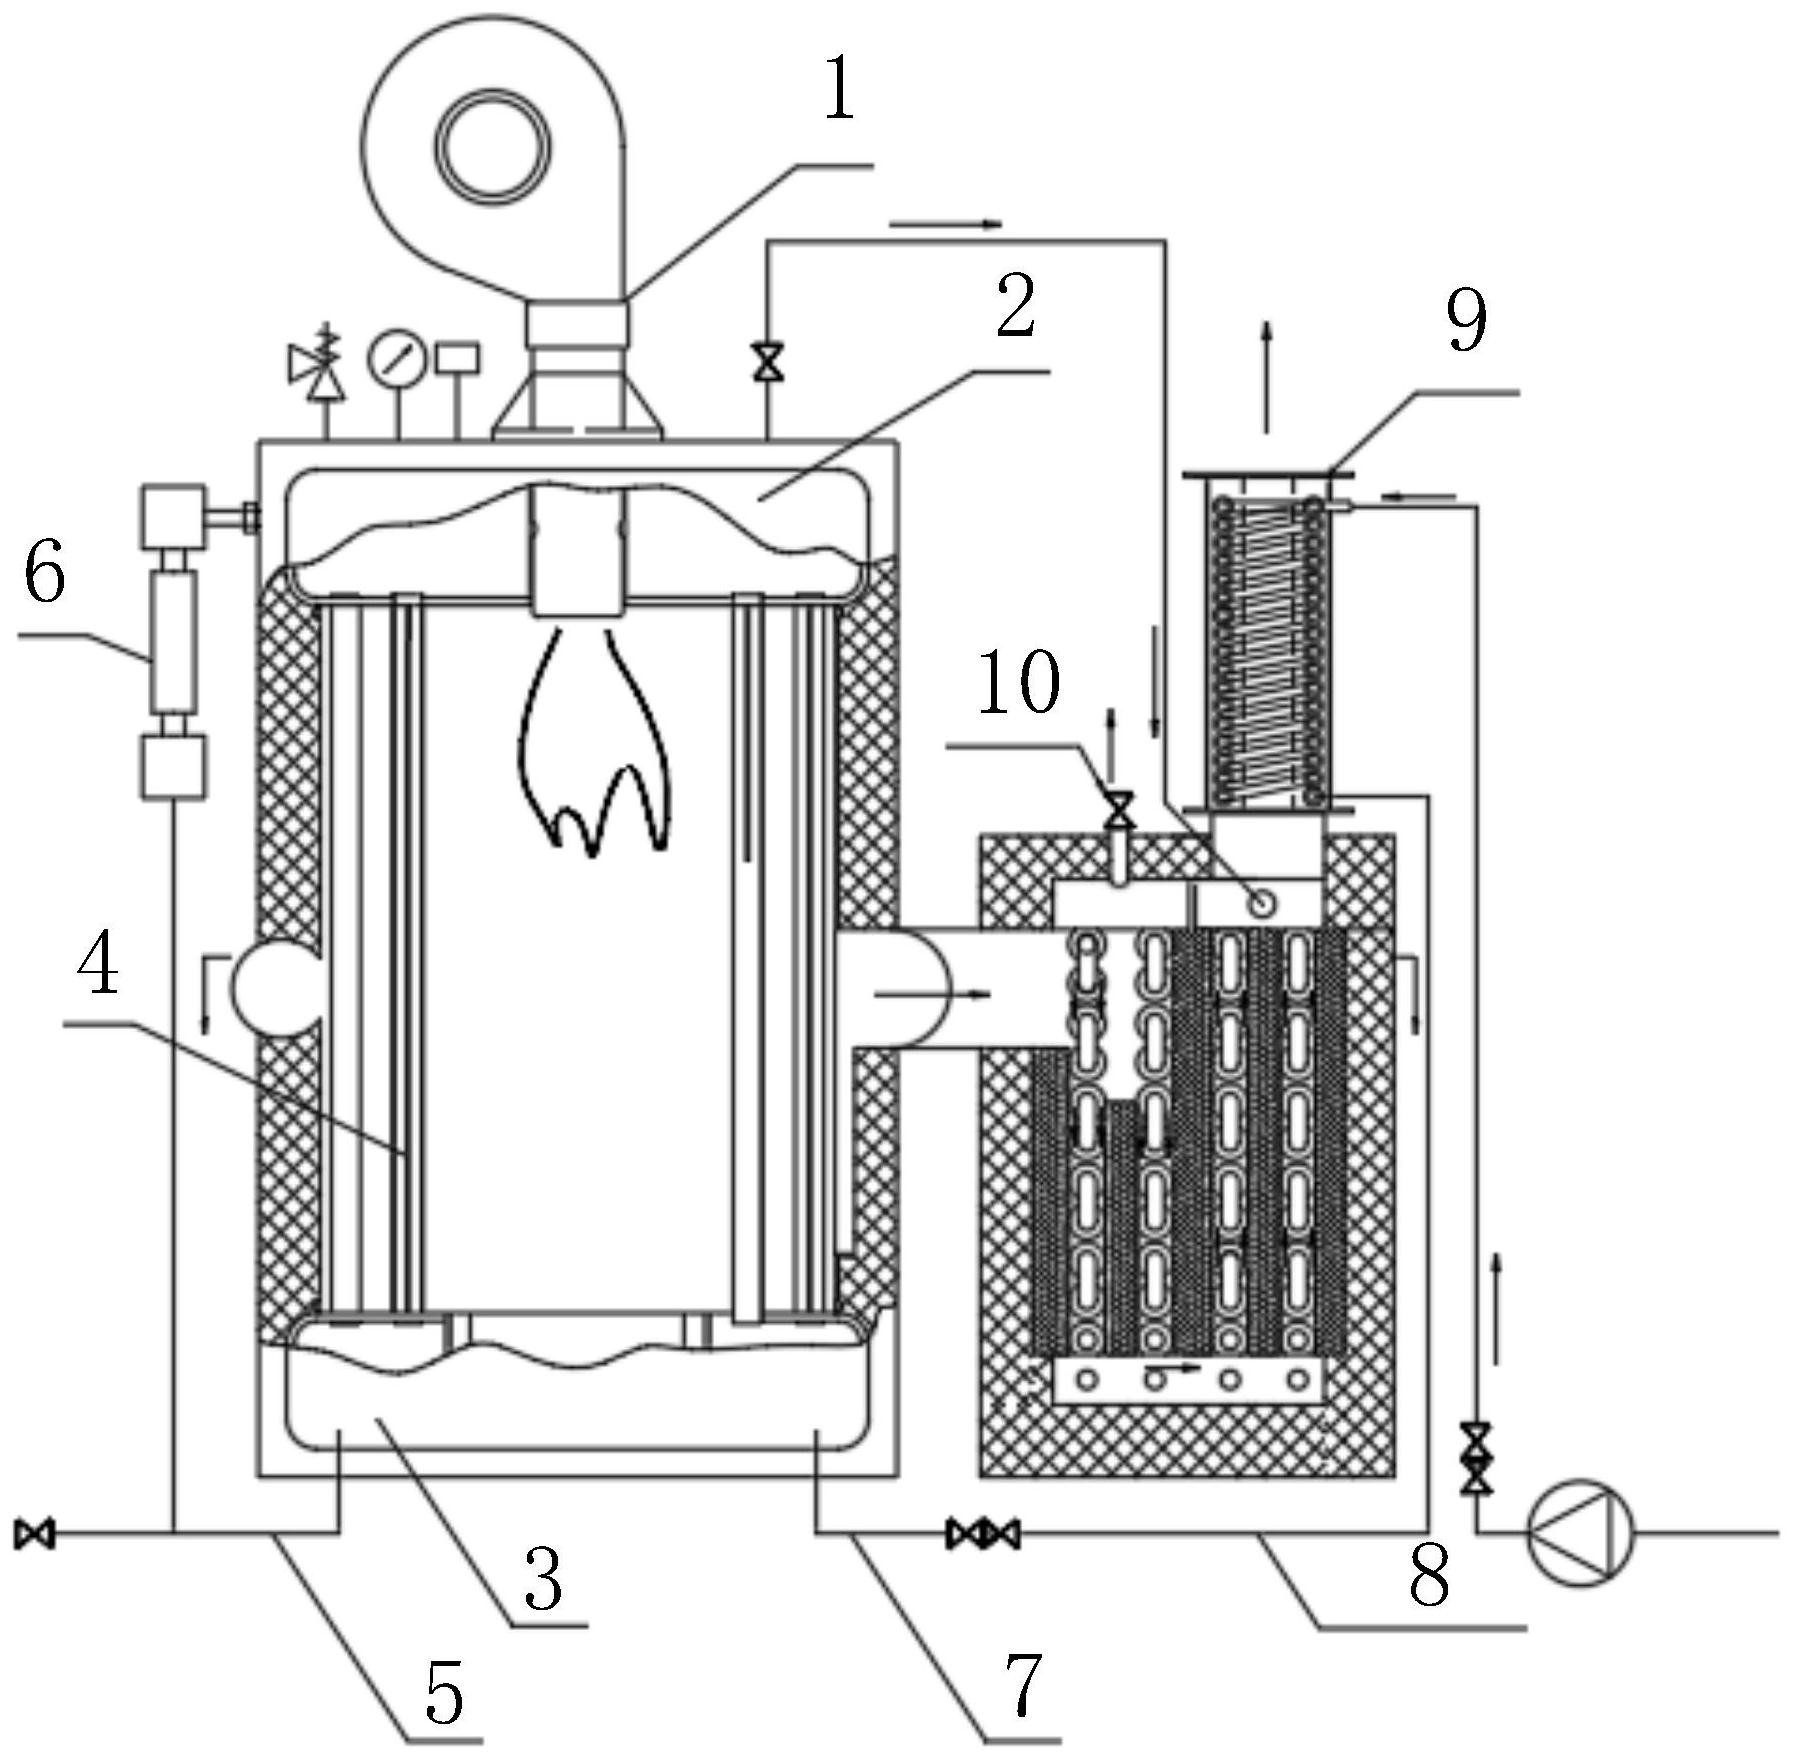 高温蒸汽发生器结构图图片